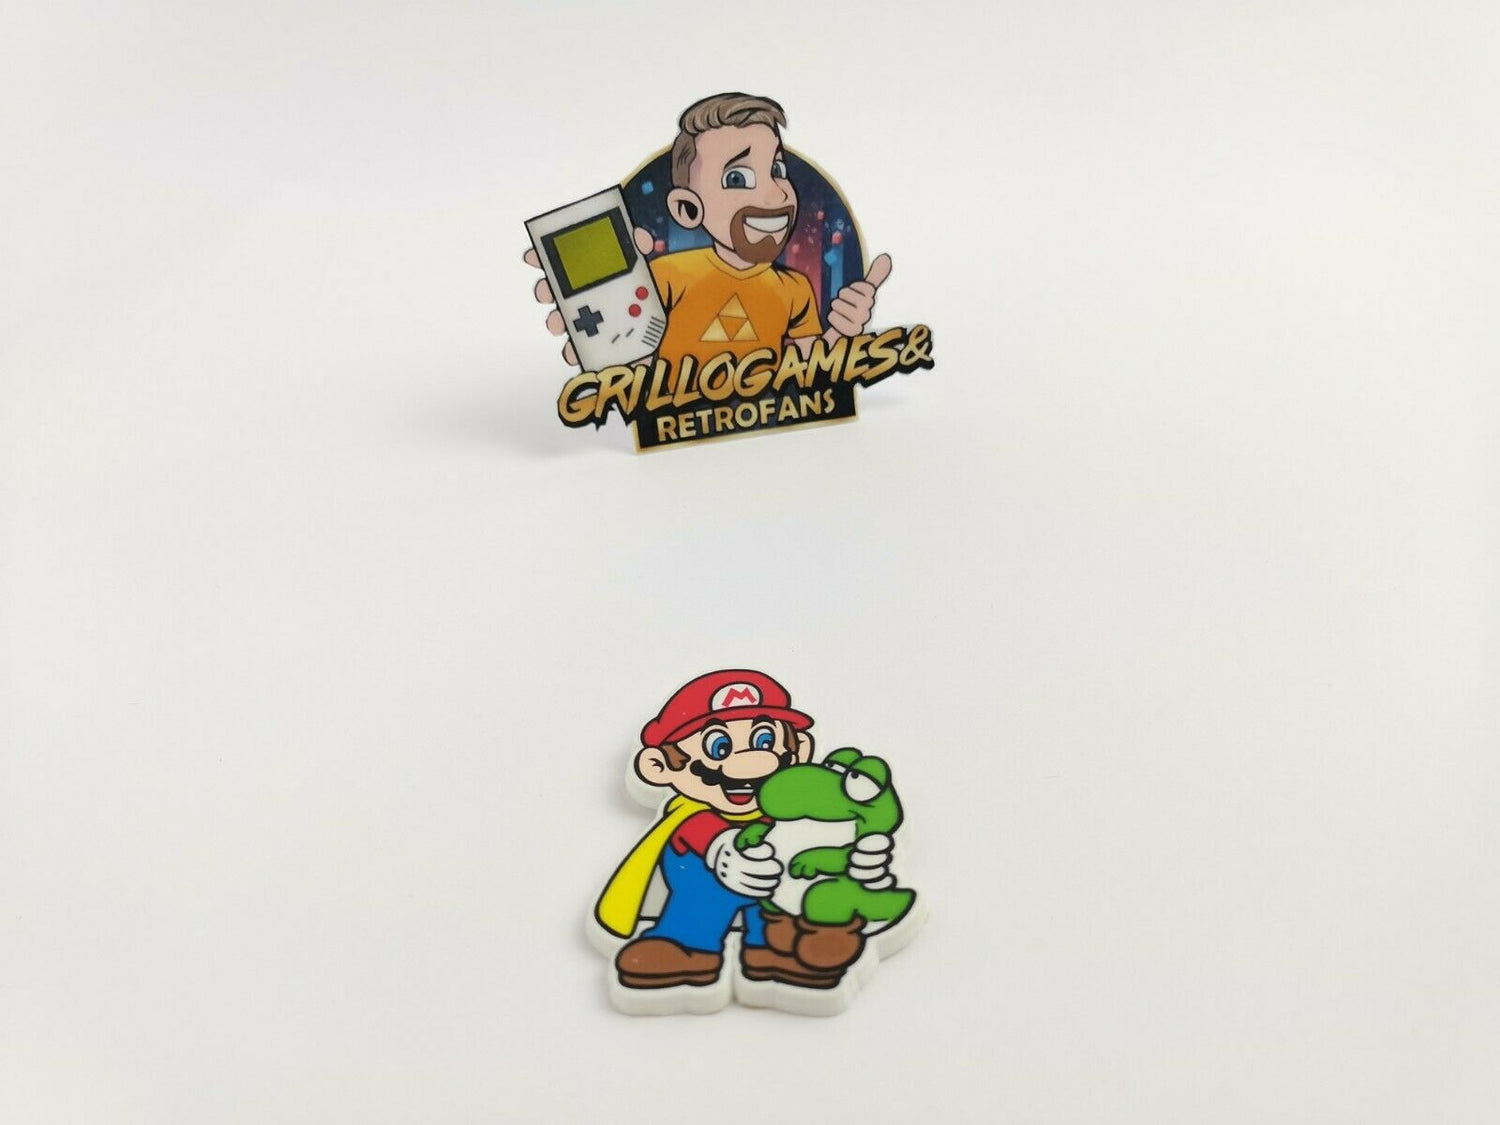 Nintendo Mario & Yoshi Ansteckpin | Pin | Anstecker 1995